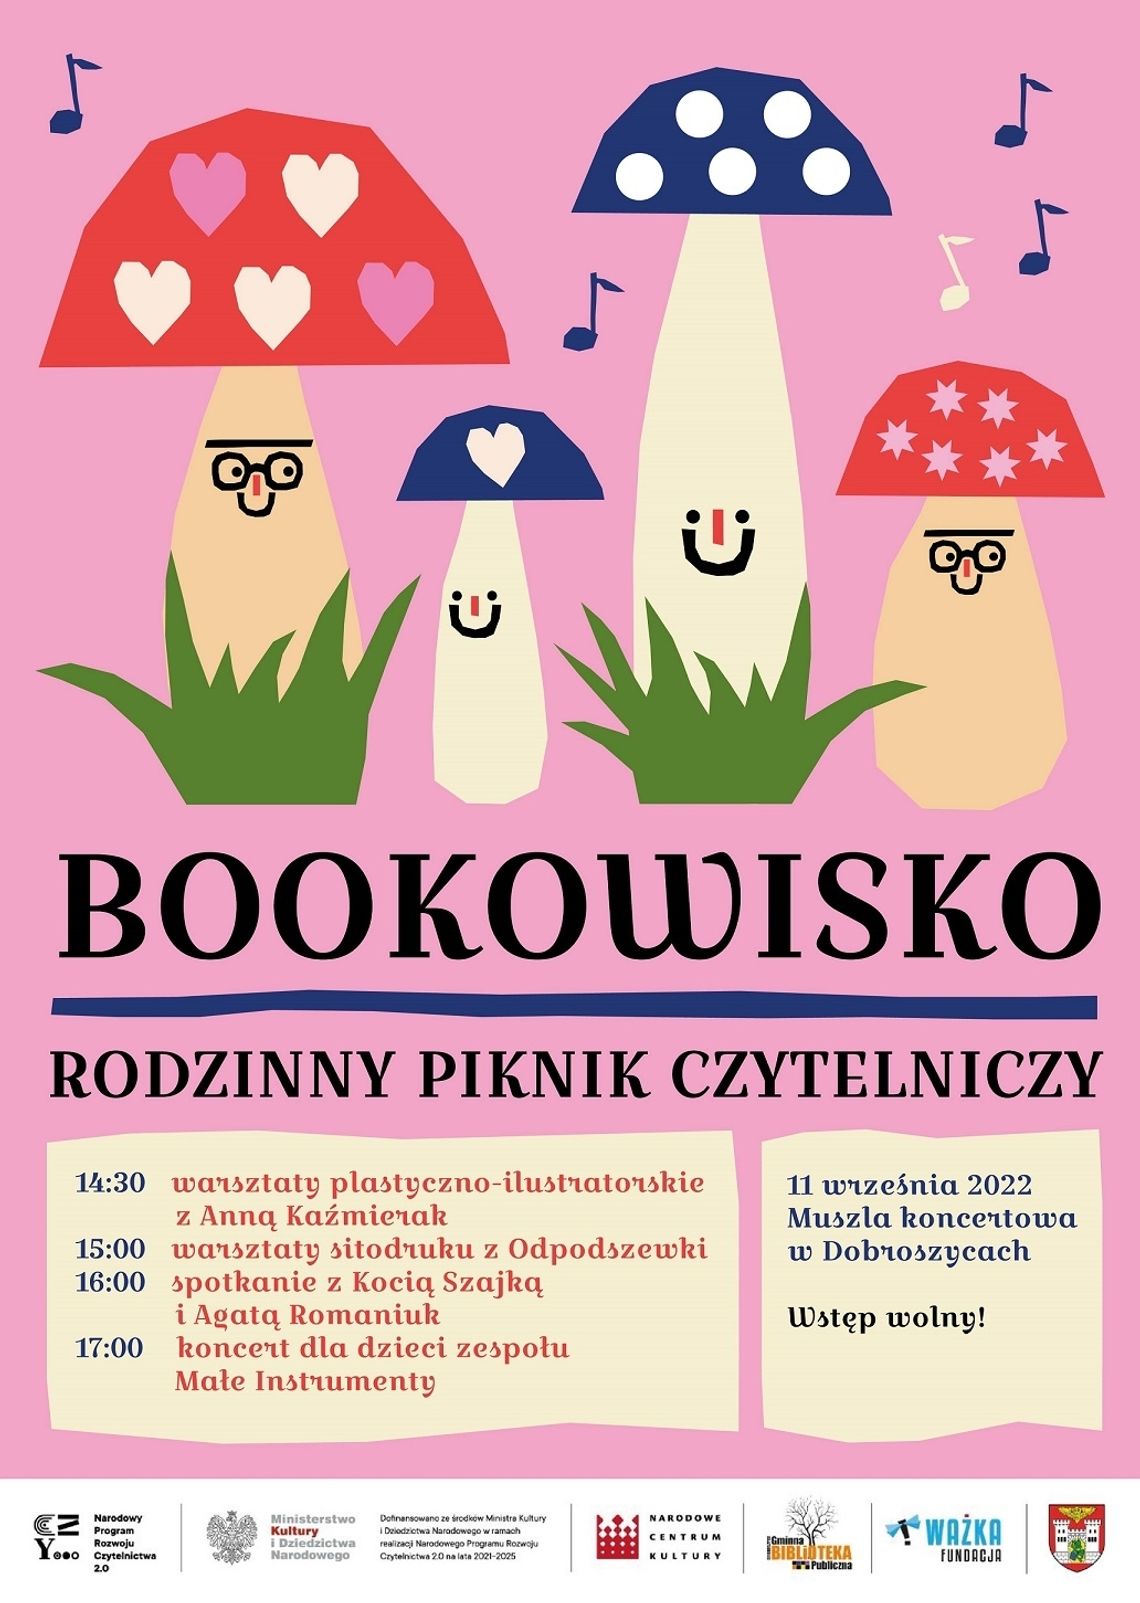 Bookowisko - rodzinny piknik czytelniczy w Dobroszycach